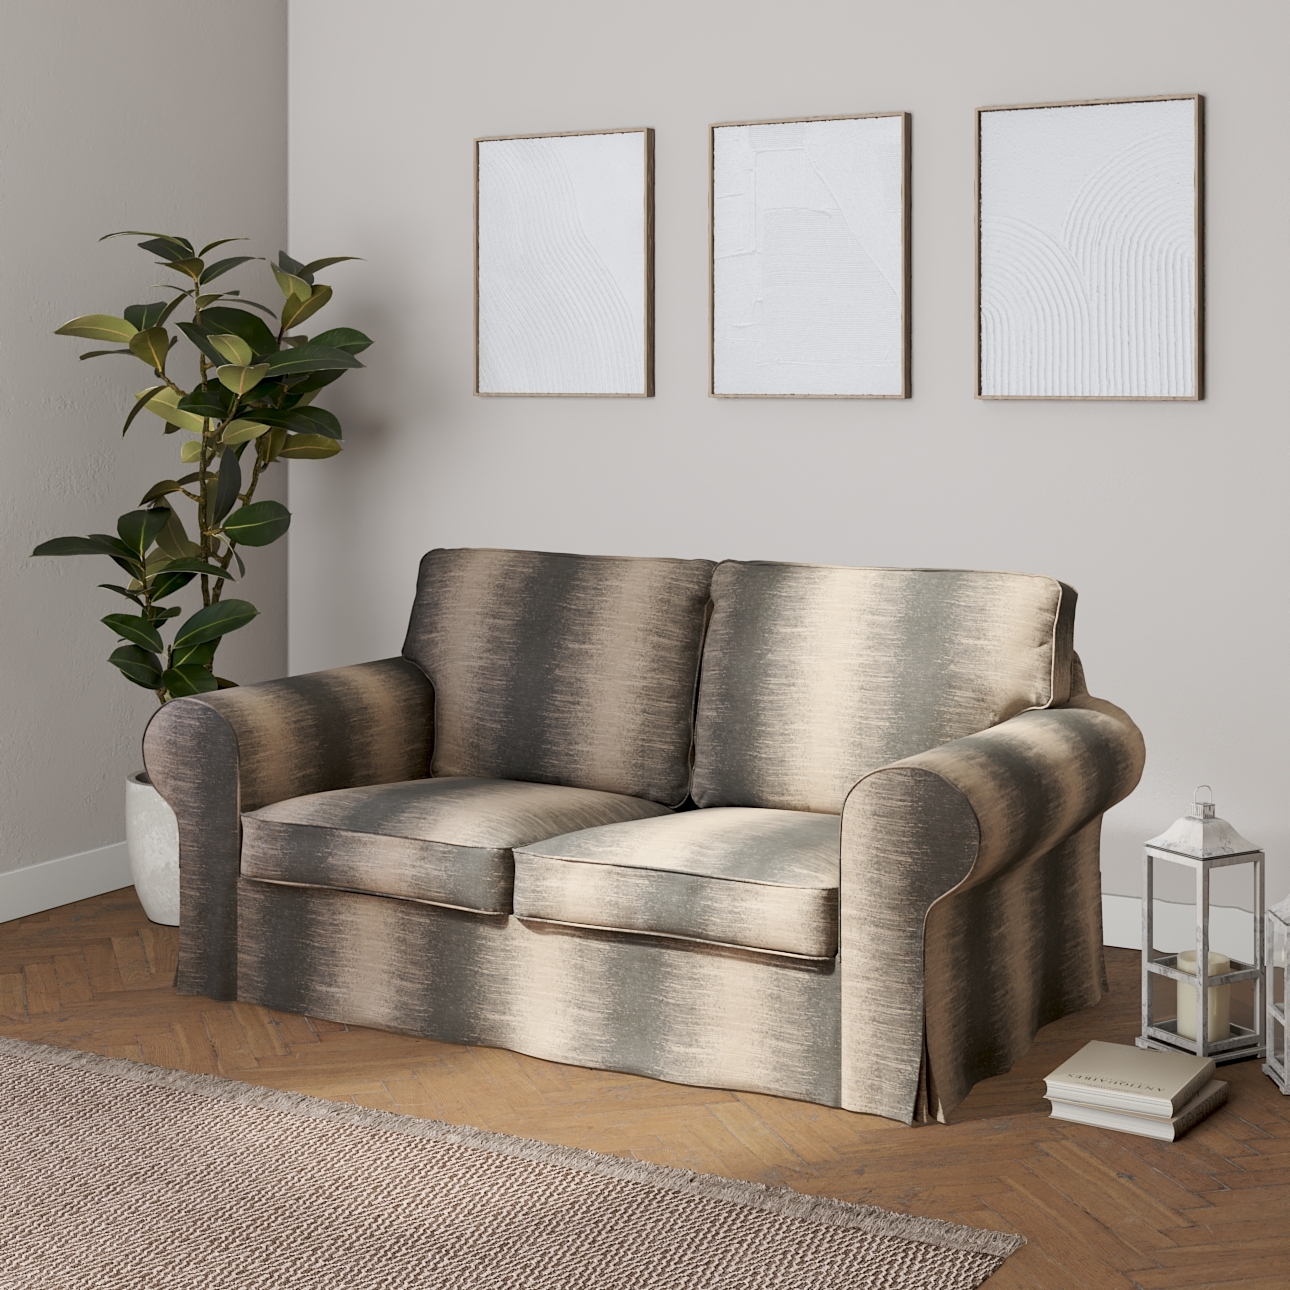 Bezug für Ektorp 2-Sitzer Schlafsofa NEUES Modell, grau-beige, Sofabezug fü günstig online kaufen